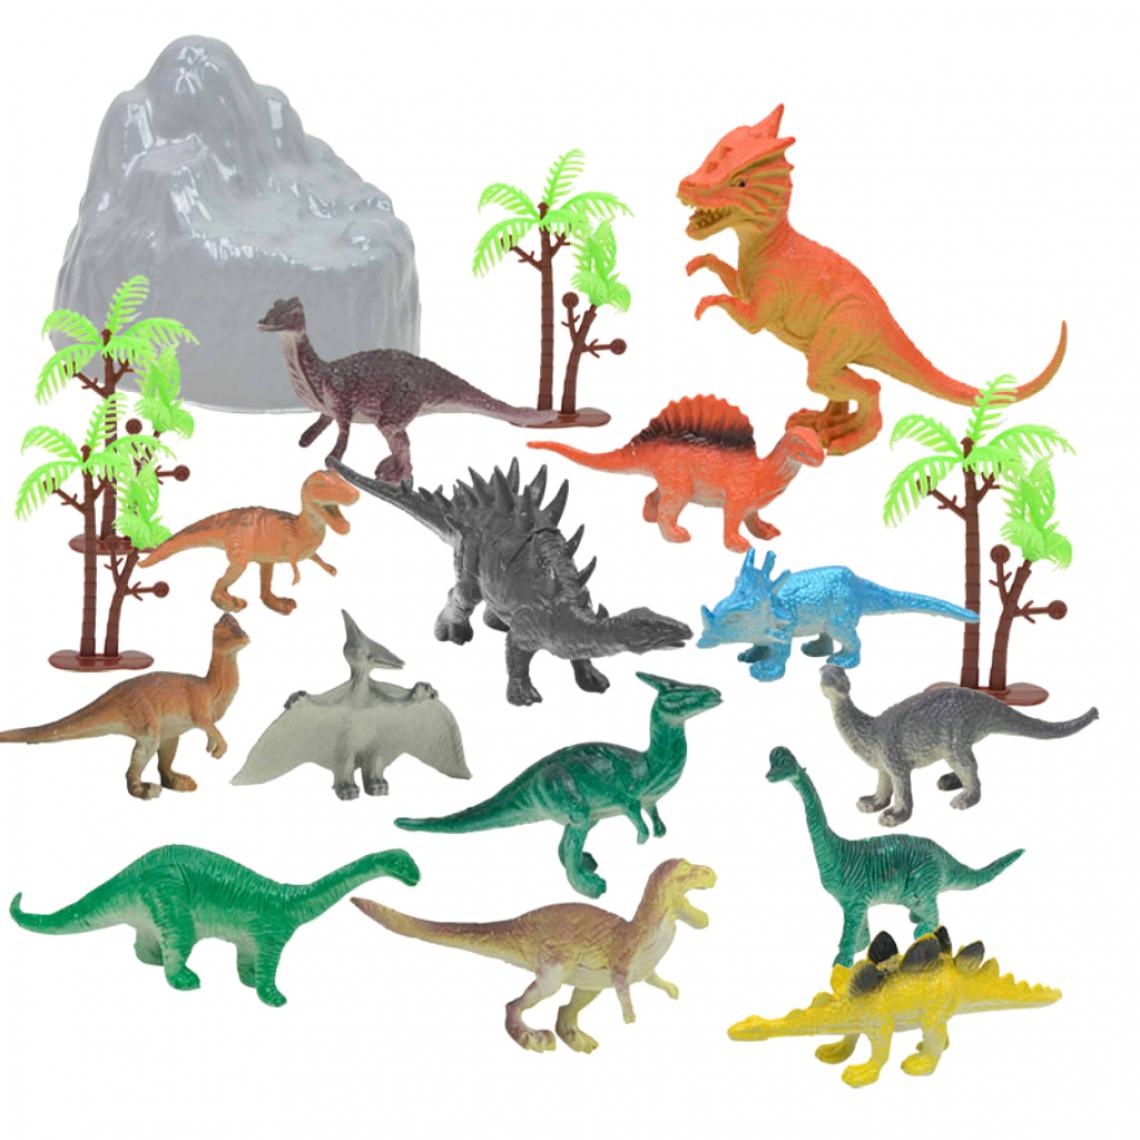 marque generique - Lot de 19pcs Dinosaure Jurassique Arbre Rocaille en Plastique Jouets Enfants Décorations Maison Bureau - Jouet pour chien